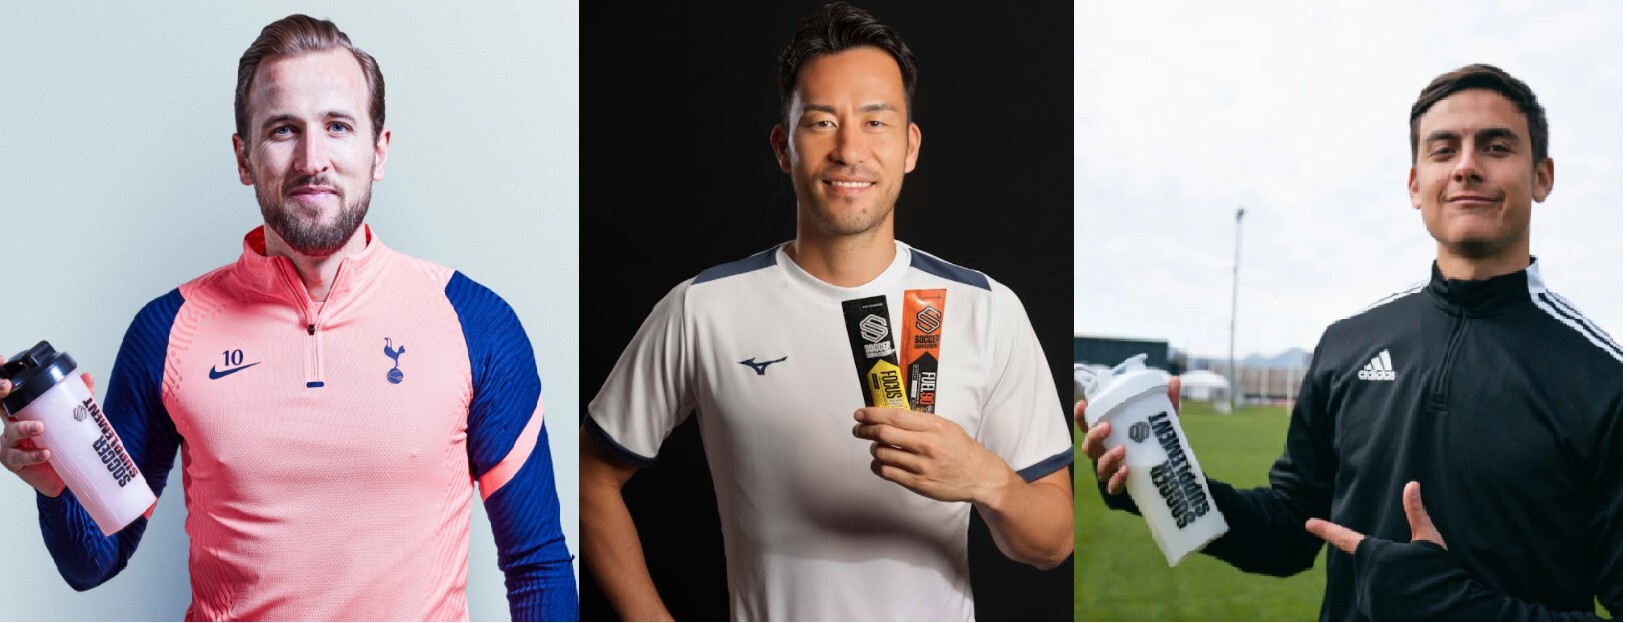 世界のプロサッカー選手が愛用 Soccer Supplement Tm のエネルギージェル 日本初上陸 株式会社サッカー サプリメントジャパンのプレスリリース